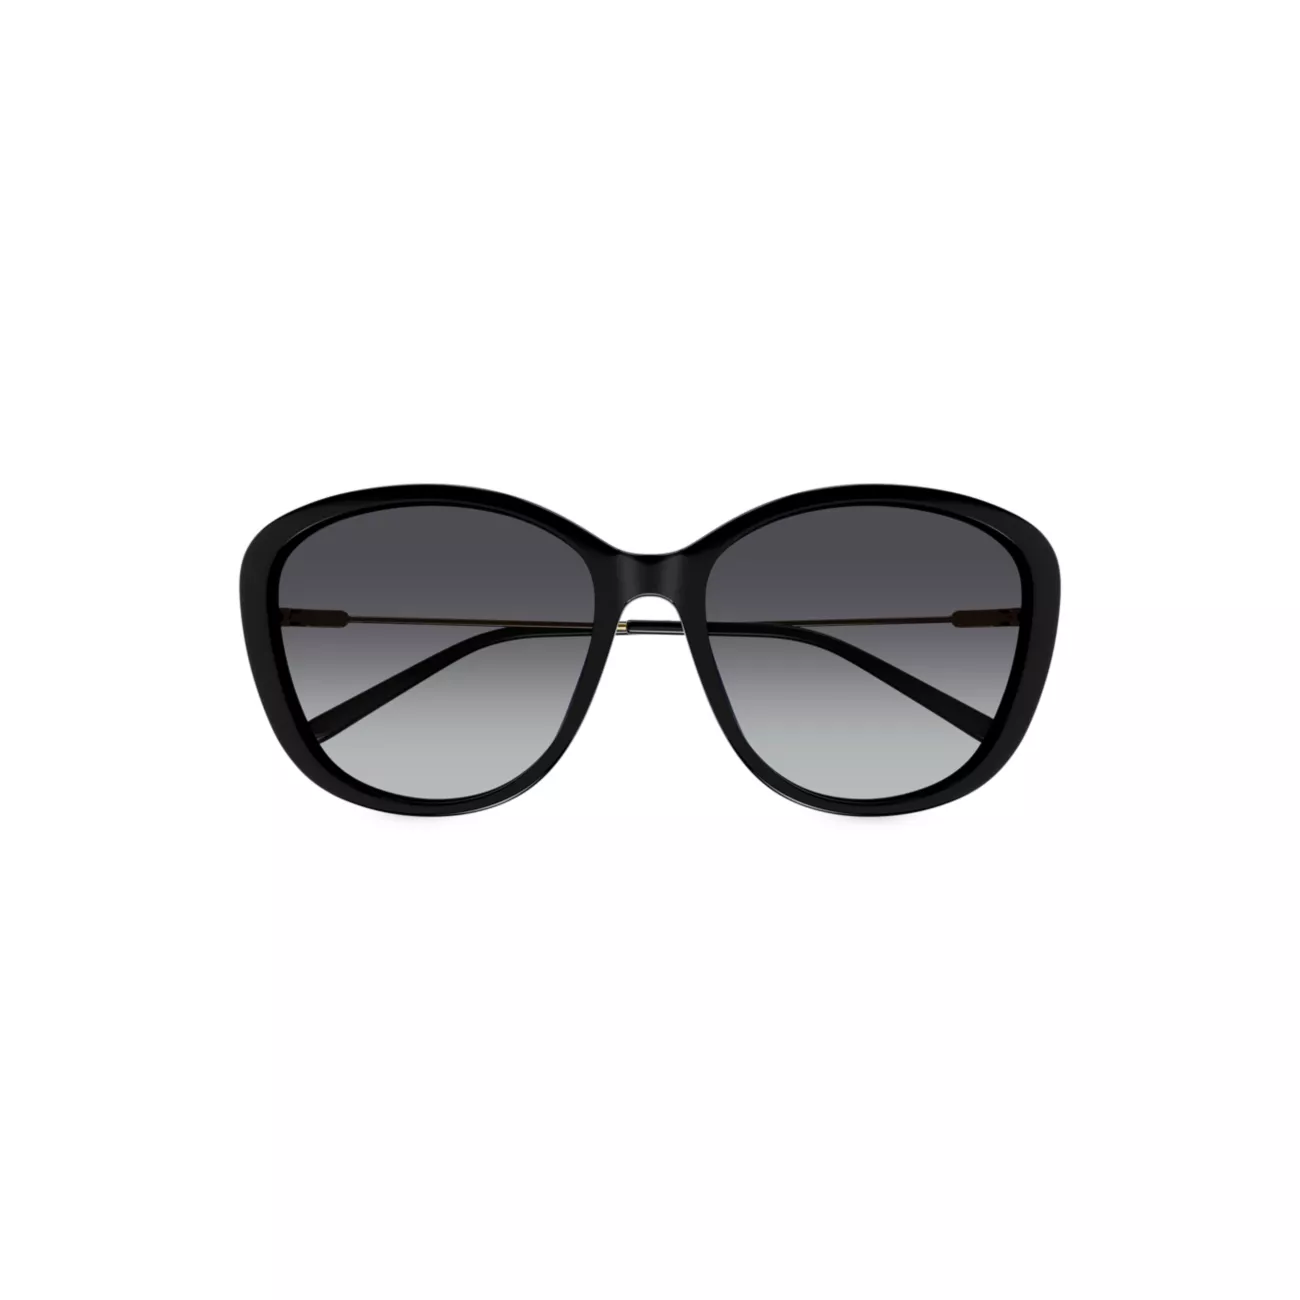 Круглые солнцезащитные очки Elys 59 мм Chloe